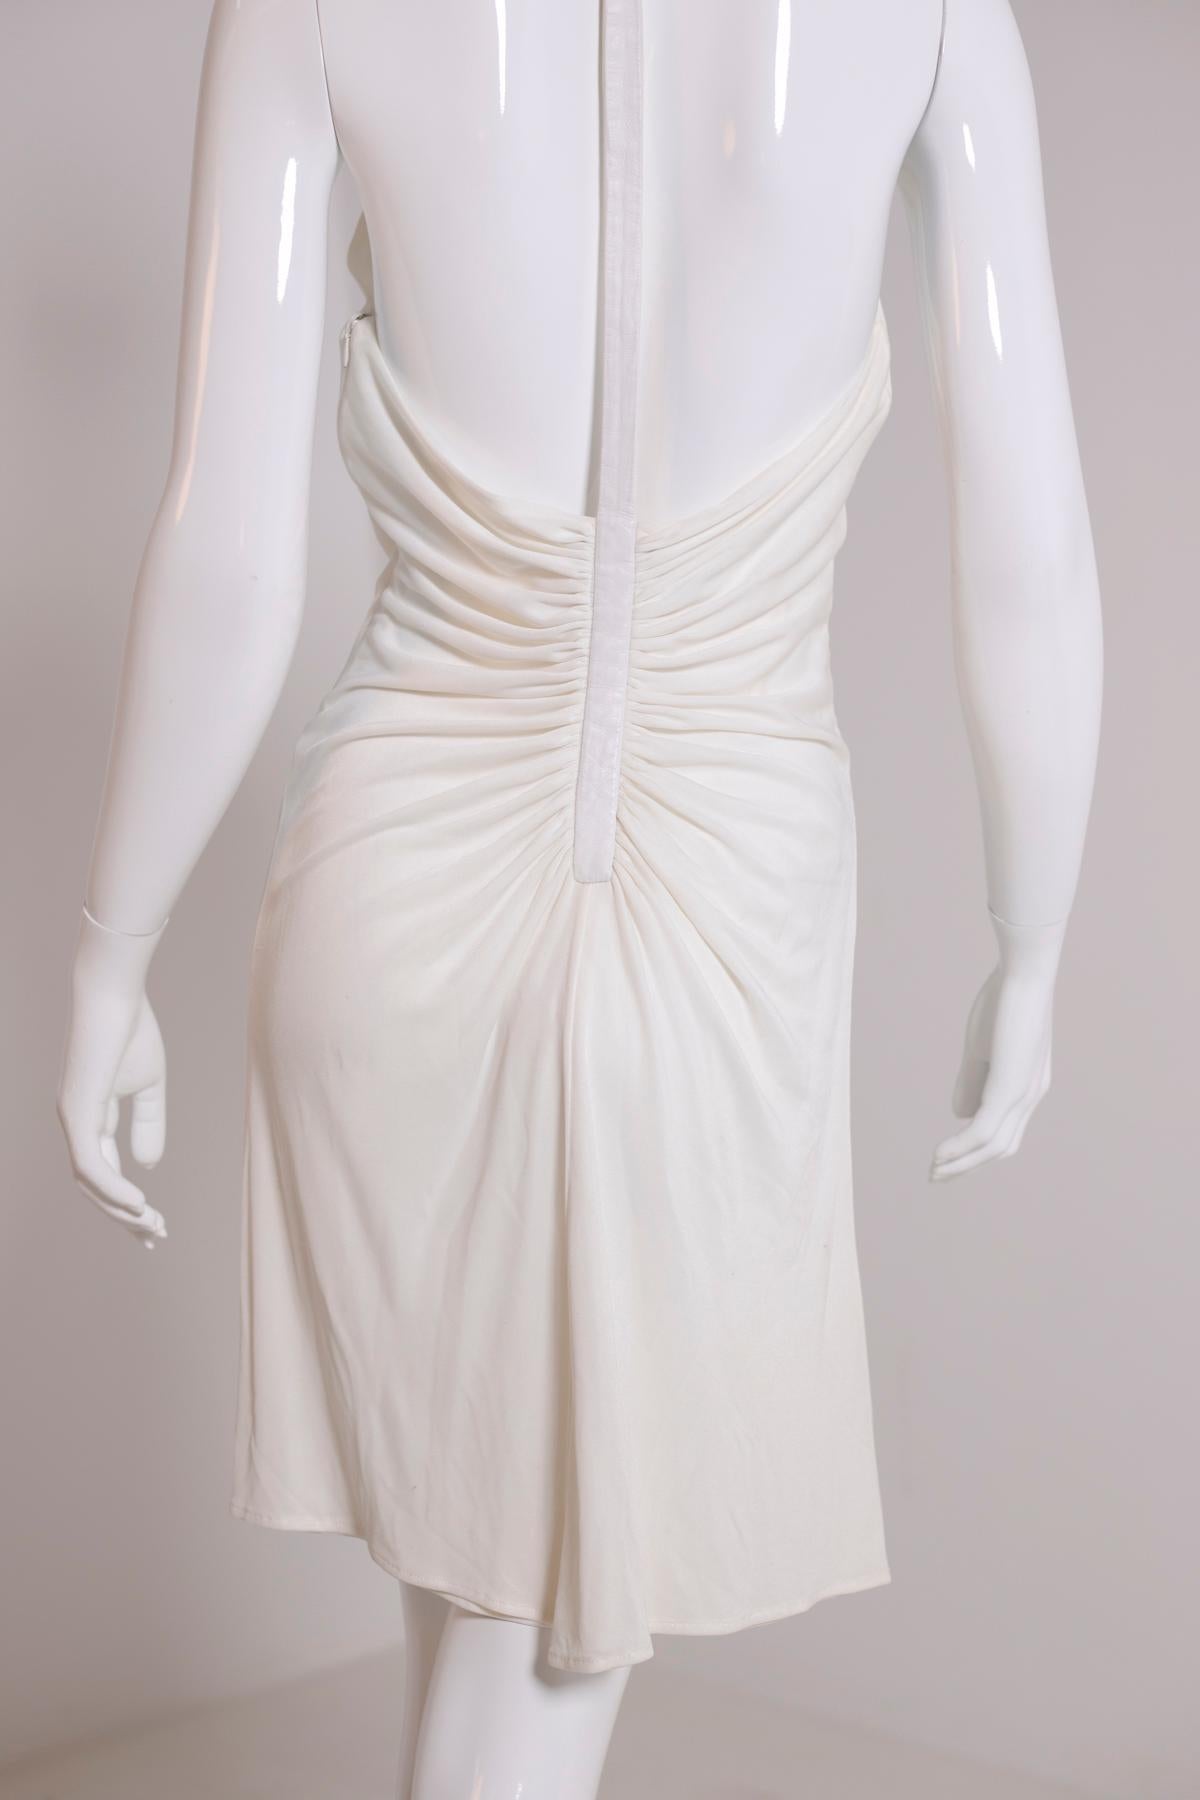 Women's Gianni Versace White Chic Dress